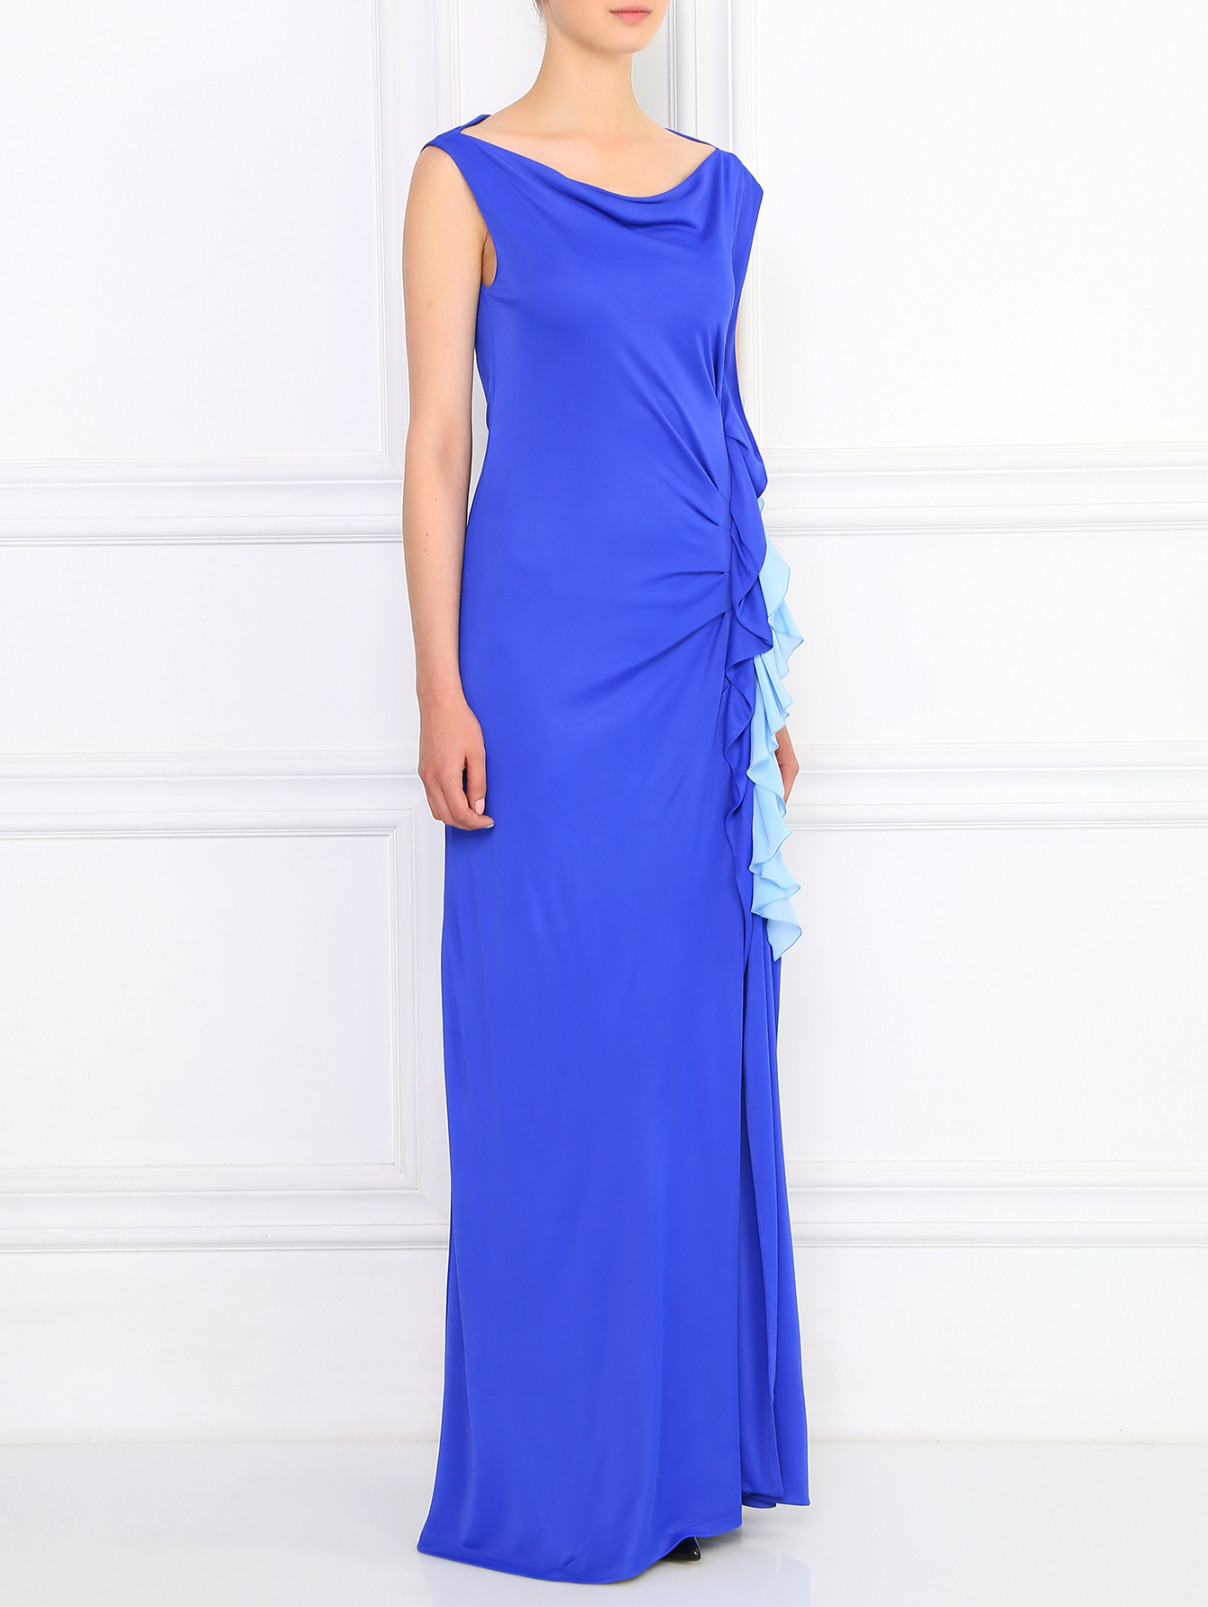 Платье-макси с драпировкой Emanuel Ungaro  –  Модель Общий вид  – Цвет:  Синий